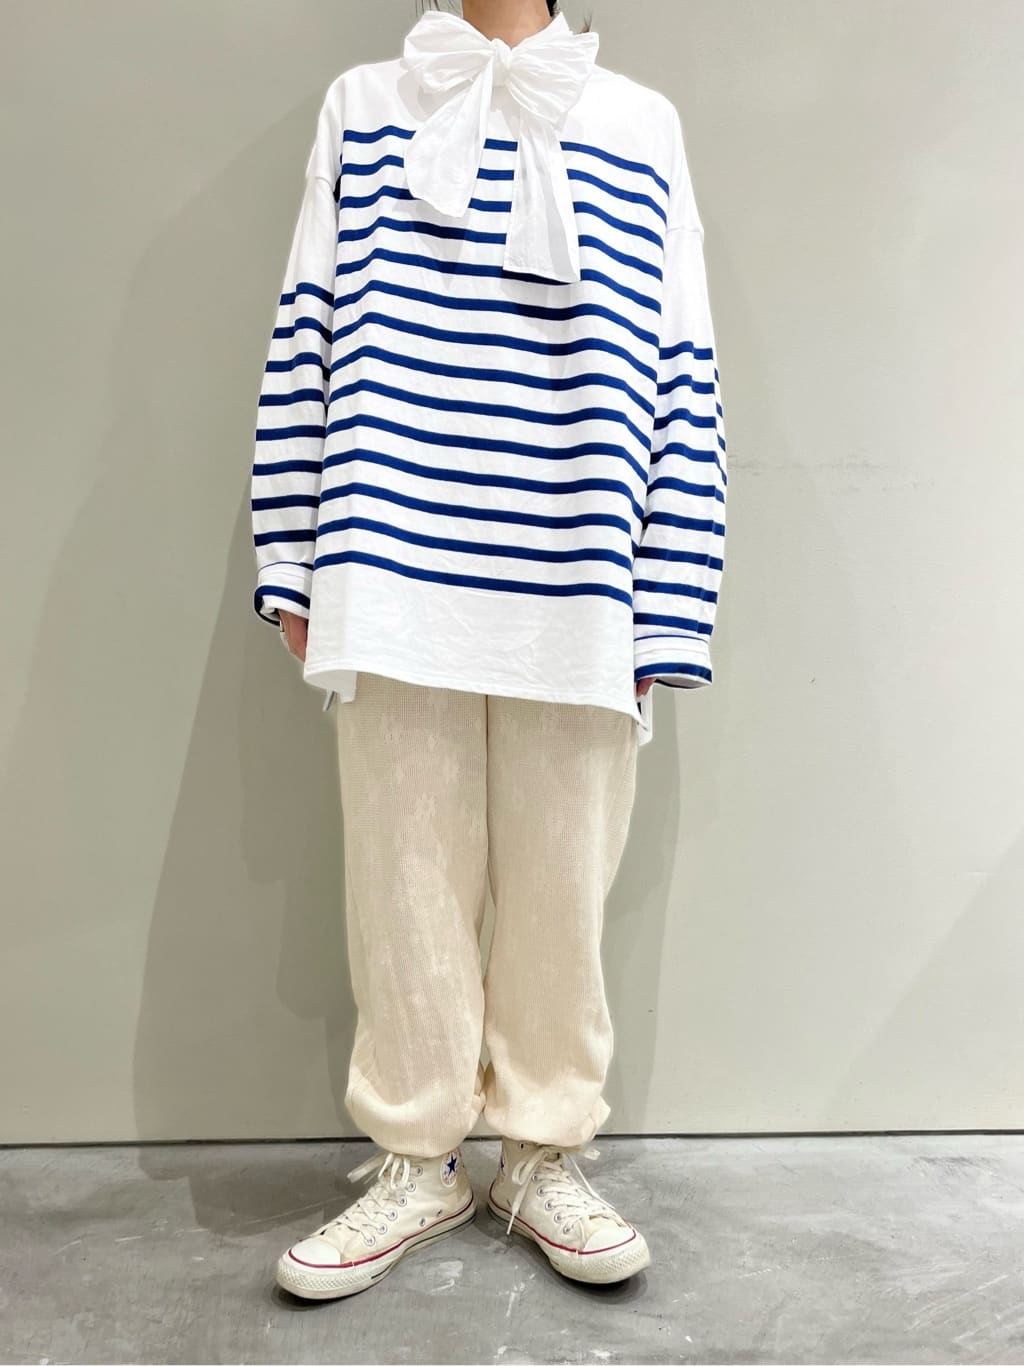 CHILD WOMAN CHILD WOMAN , PAR ICI 新宿ミロード 身長：154cm 2022.09.08